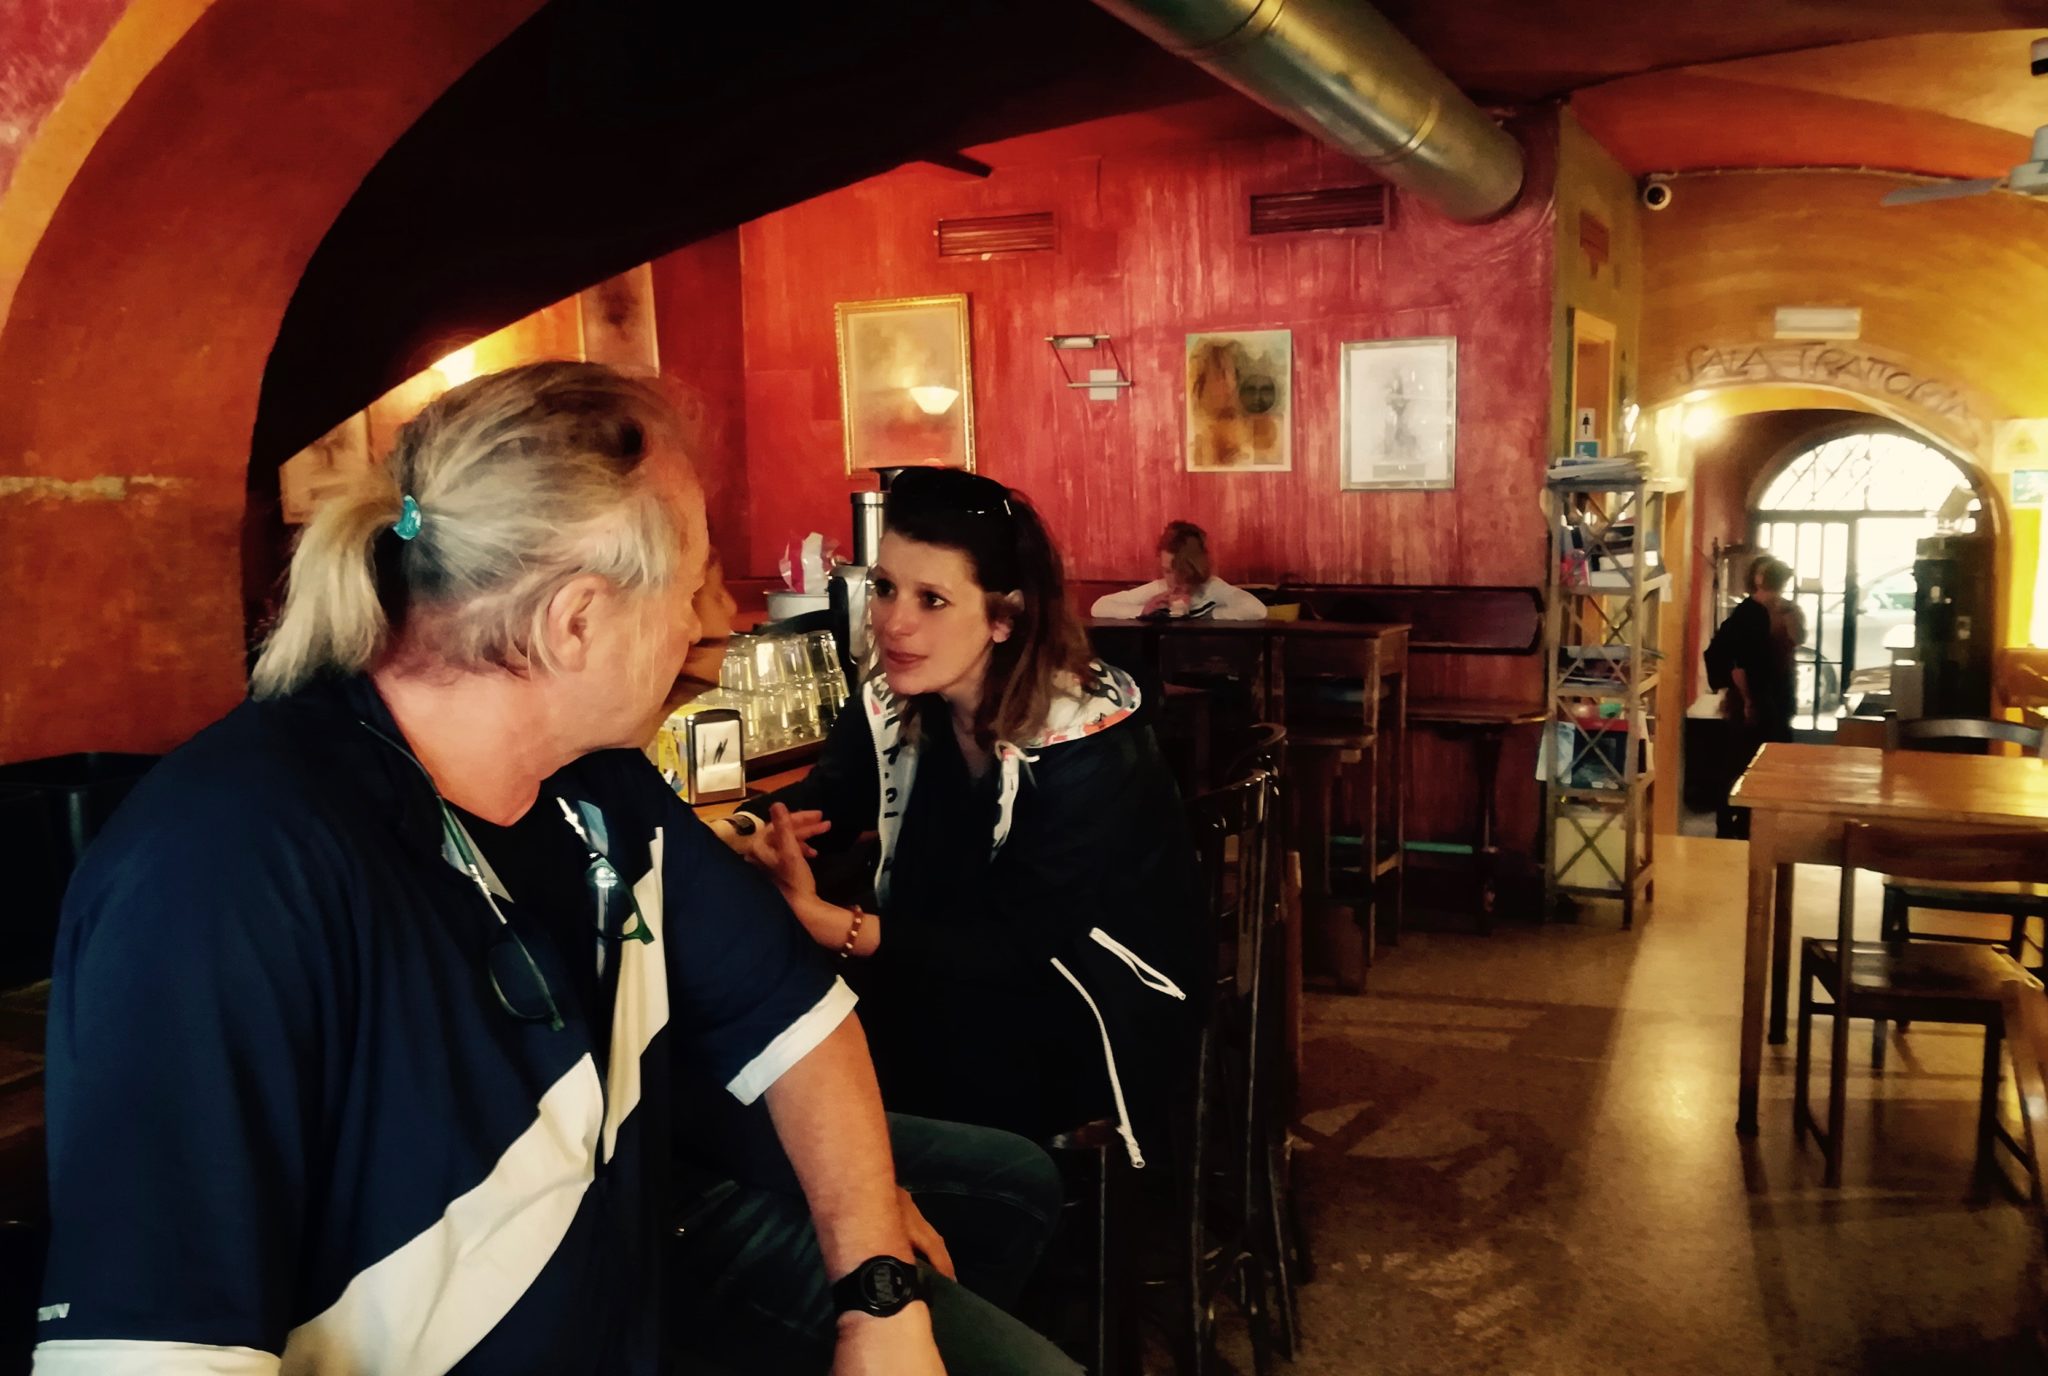 Verena e Marco sognavano di aprire un bar in Grecia. Hanno aperto a Bolzano il Nadamas: cucina etnica, musica da ovunque, luogo cult